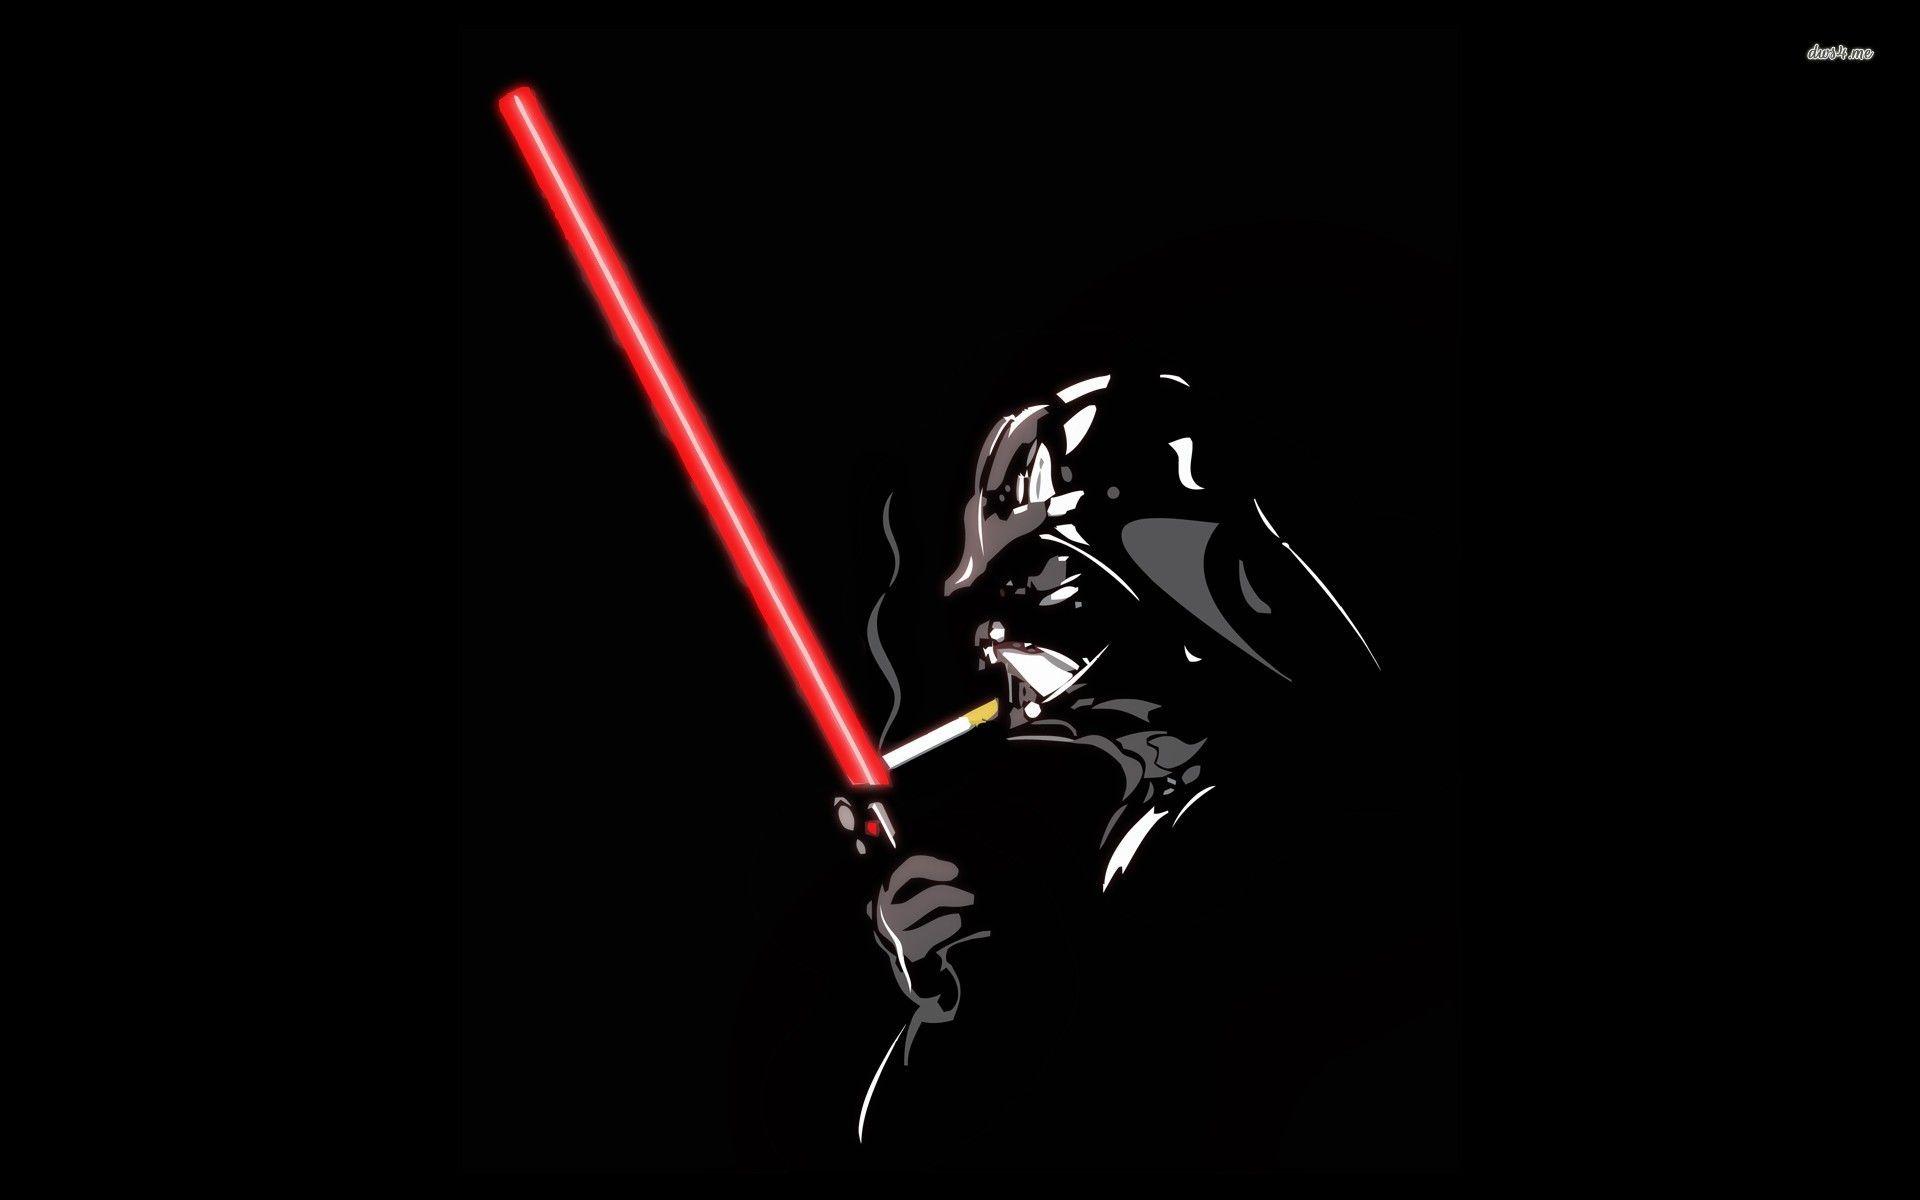 Awesome Darth Vader Image Darth Vader Wallpaper 1920×1080